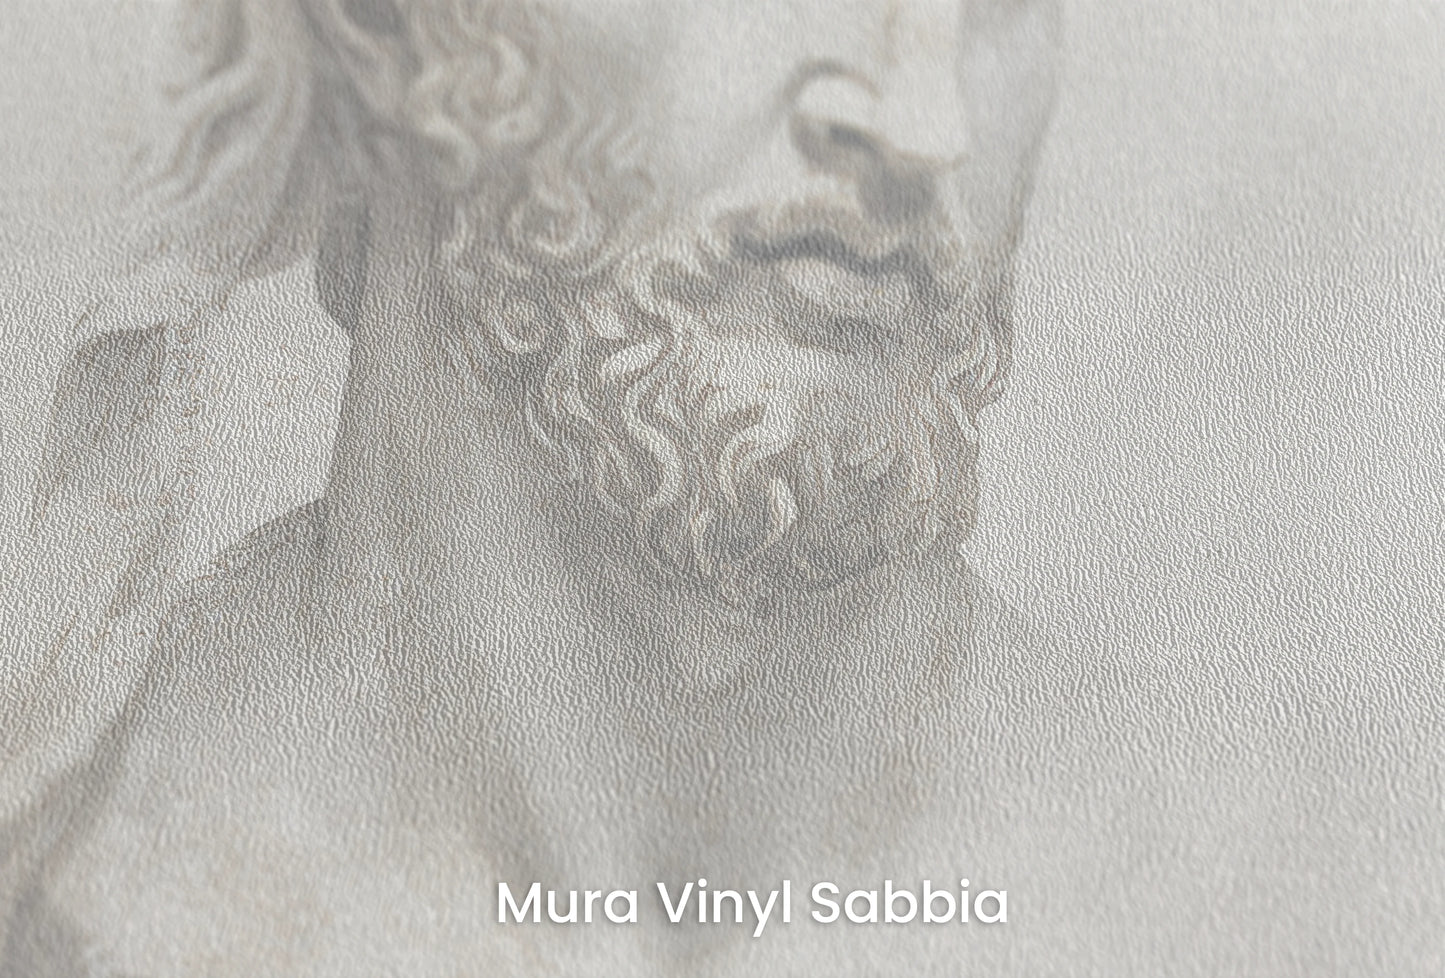 Zbliżenie na artystyczną fototapetę o nazwie Hera's Gaze na podłożu Mura Vinyl Sabbia struktura grubego ziarna piasku.